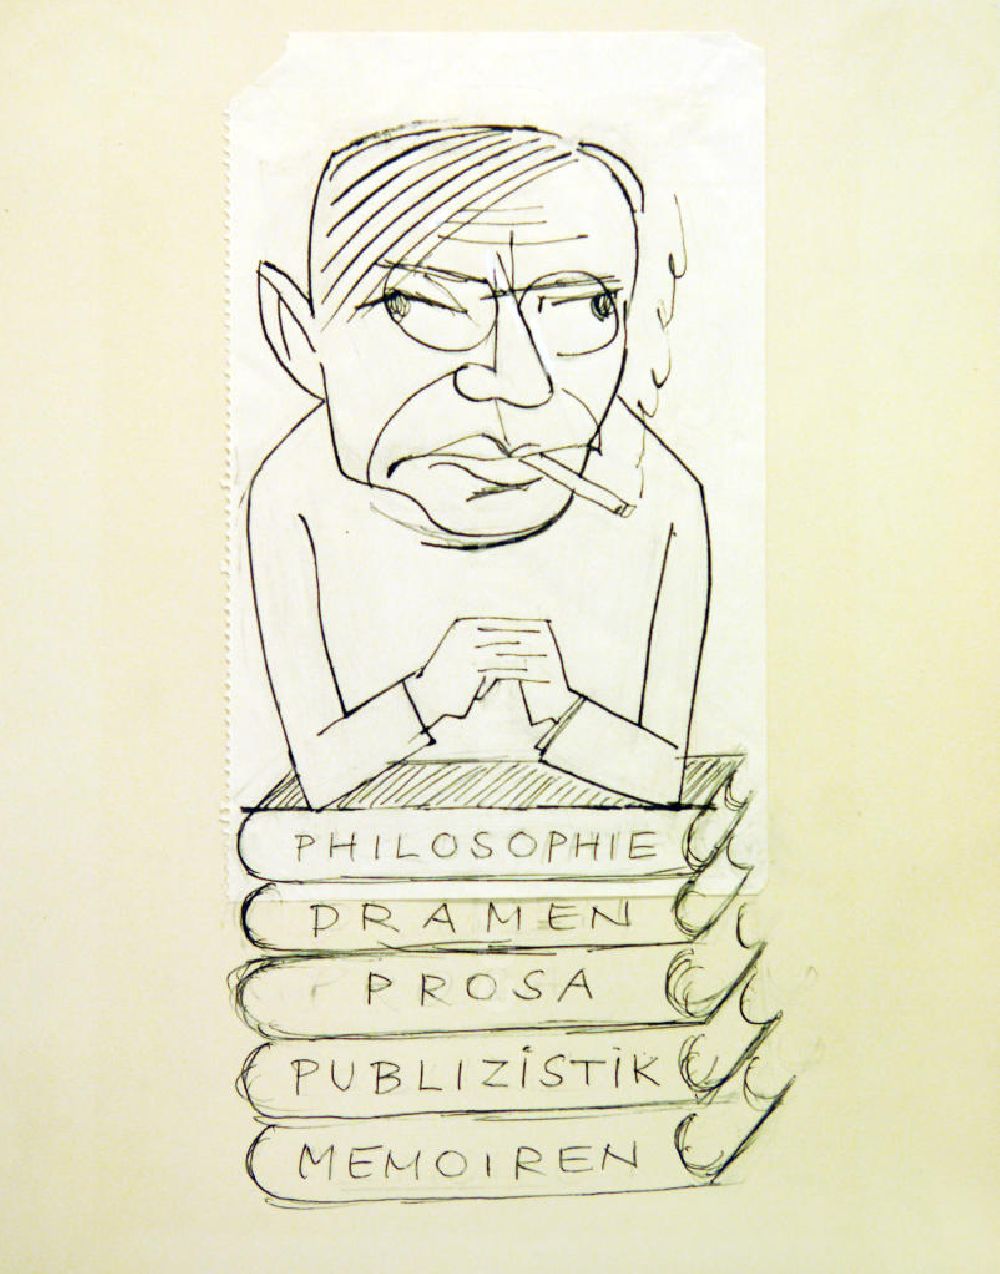 GDR picture archive: Berlin - Skizze von Herbert Sandberg 13,7x26,2cm schwarzer Zeichenstift. Eine Person mit Brille raucht und stützt sich auf einen Stapel Bücher, auf den Büchern steht Philosophie, Dramen, Prosa, Publizistik und Memoiren.